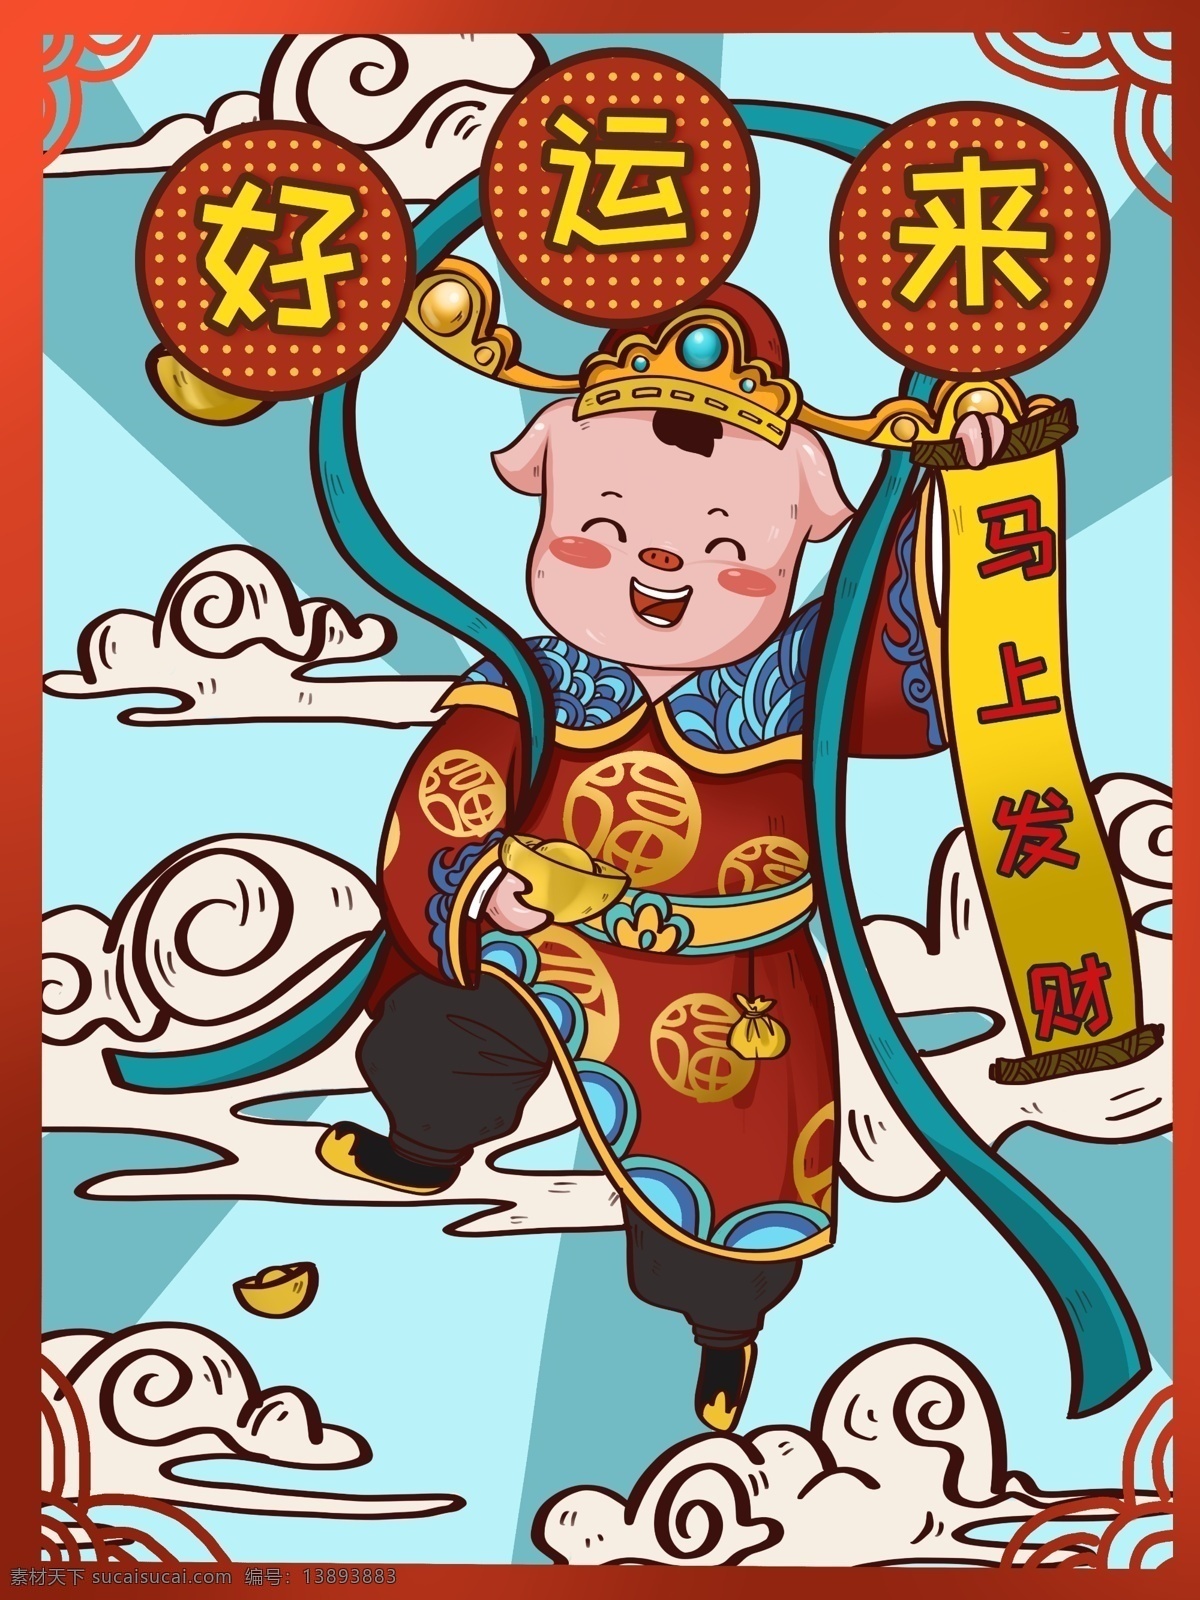 潮 漫 卡通 新年 小 猪 财神 带来 好运 插画 可爱 喜庆 中国元素 金元宝 潮漫卡通 猪年 小猪